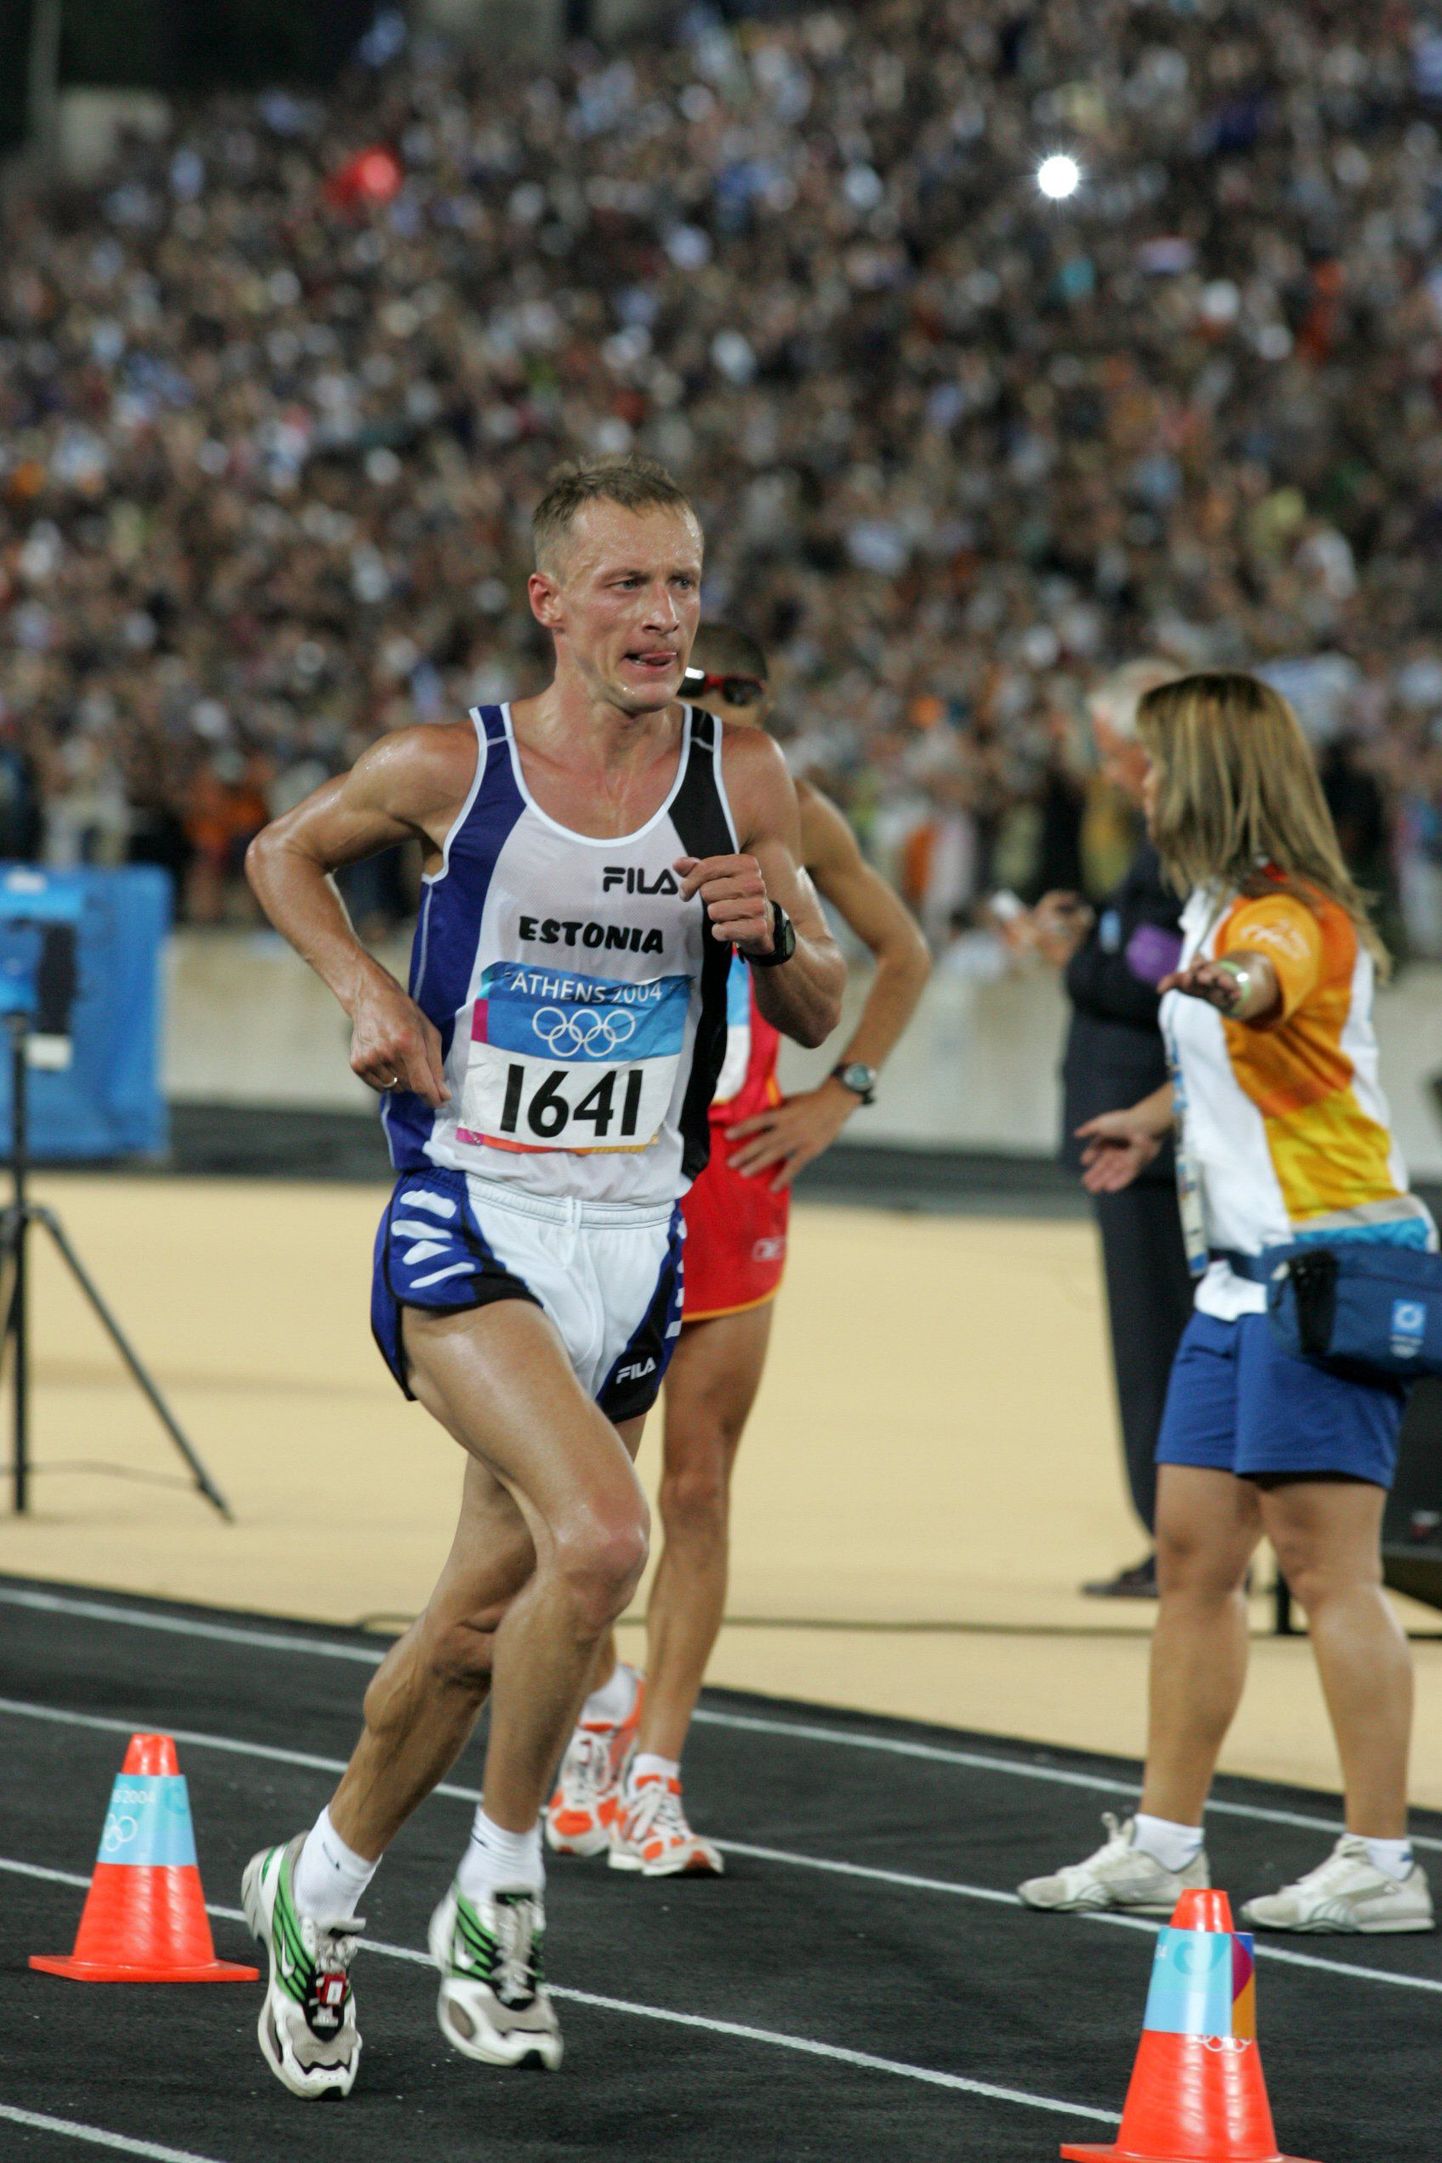 Edukaima olümpiastardi tegi Pavel Loskutov 2004. aasta Ateena OMil, kui ta lõpetas võistluse 26. kohaga.